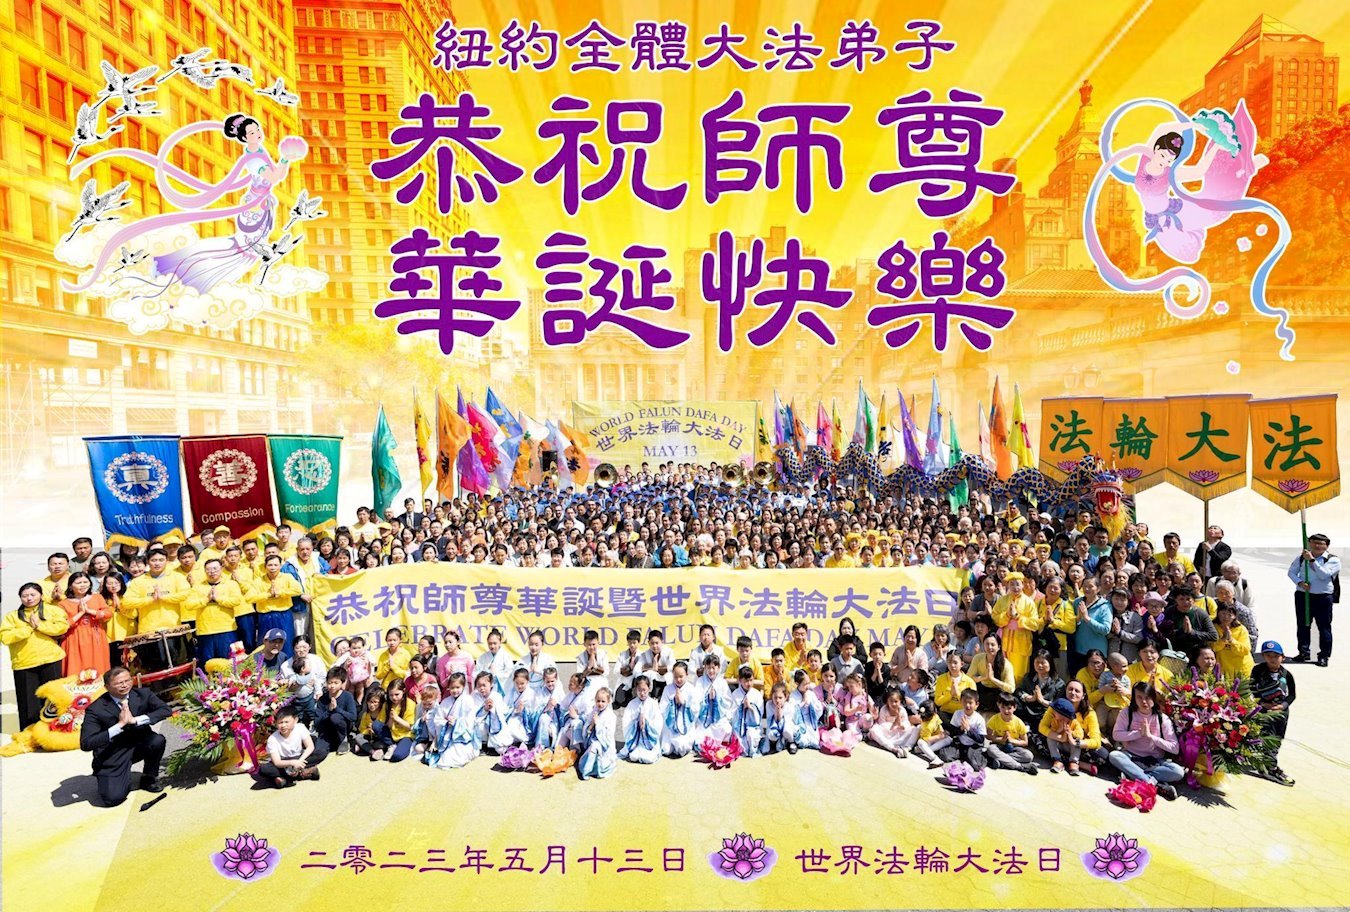 Image for article Les pratiquants du Falun Dafa de la région de New York célèbrent la Journée mondiale du Falun Dafa et souhaitent respectueusement un joyeux anniversaire au vénérable Maître